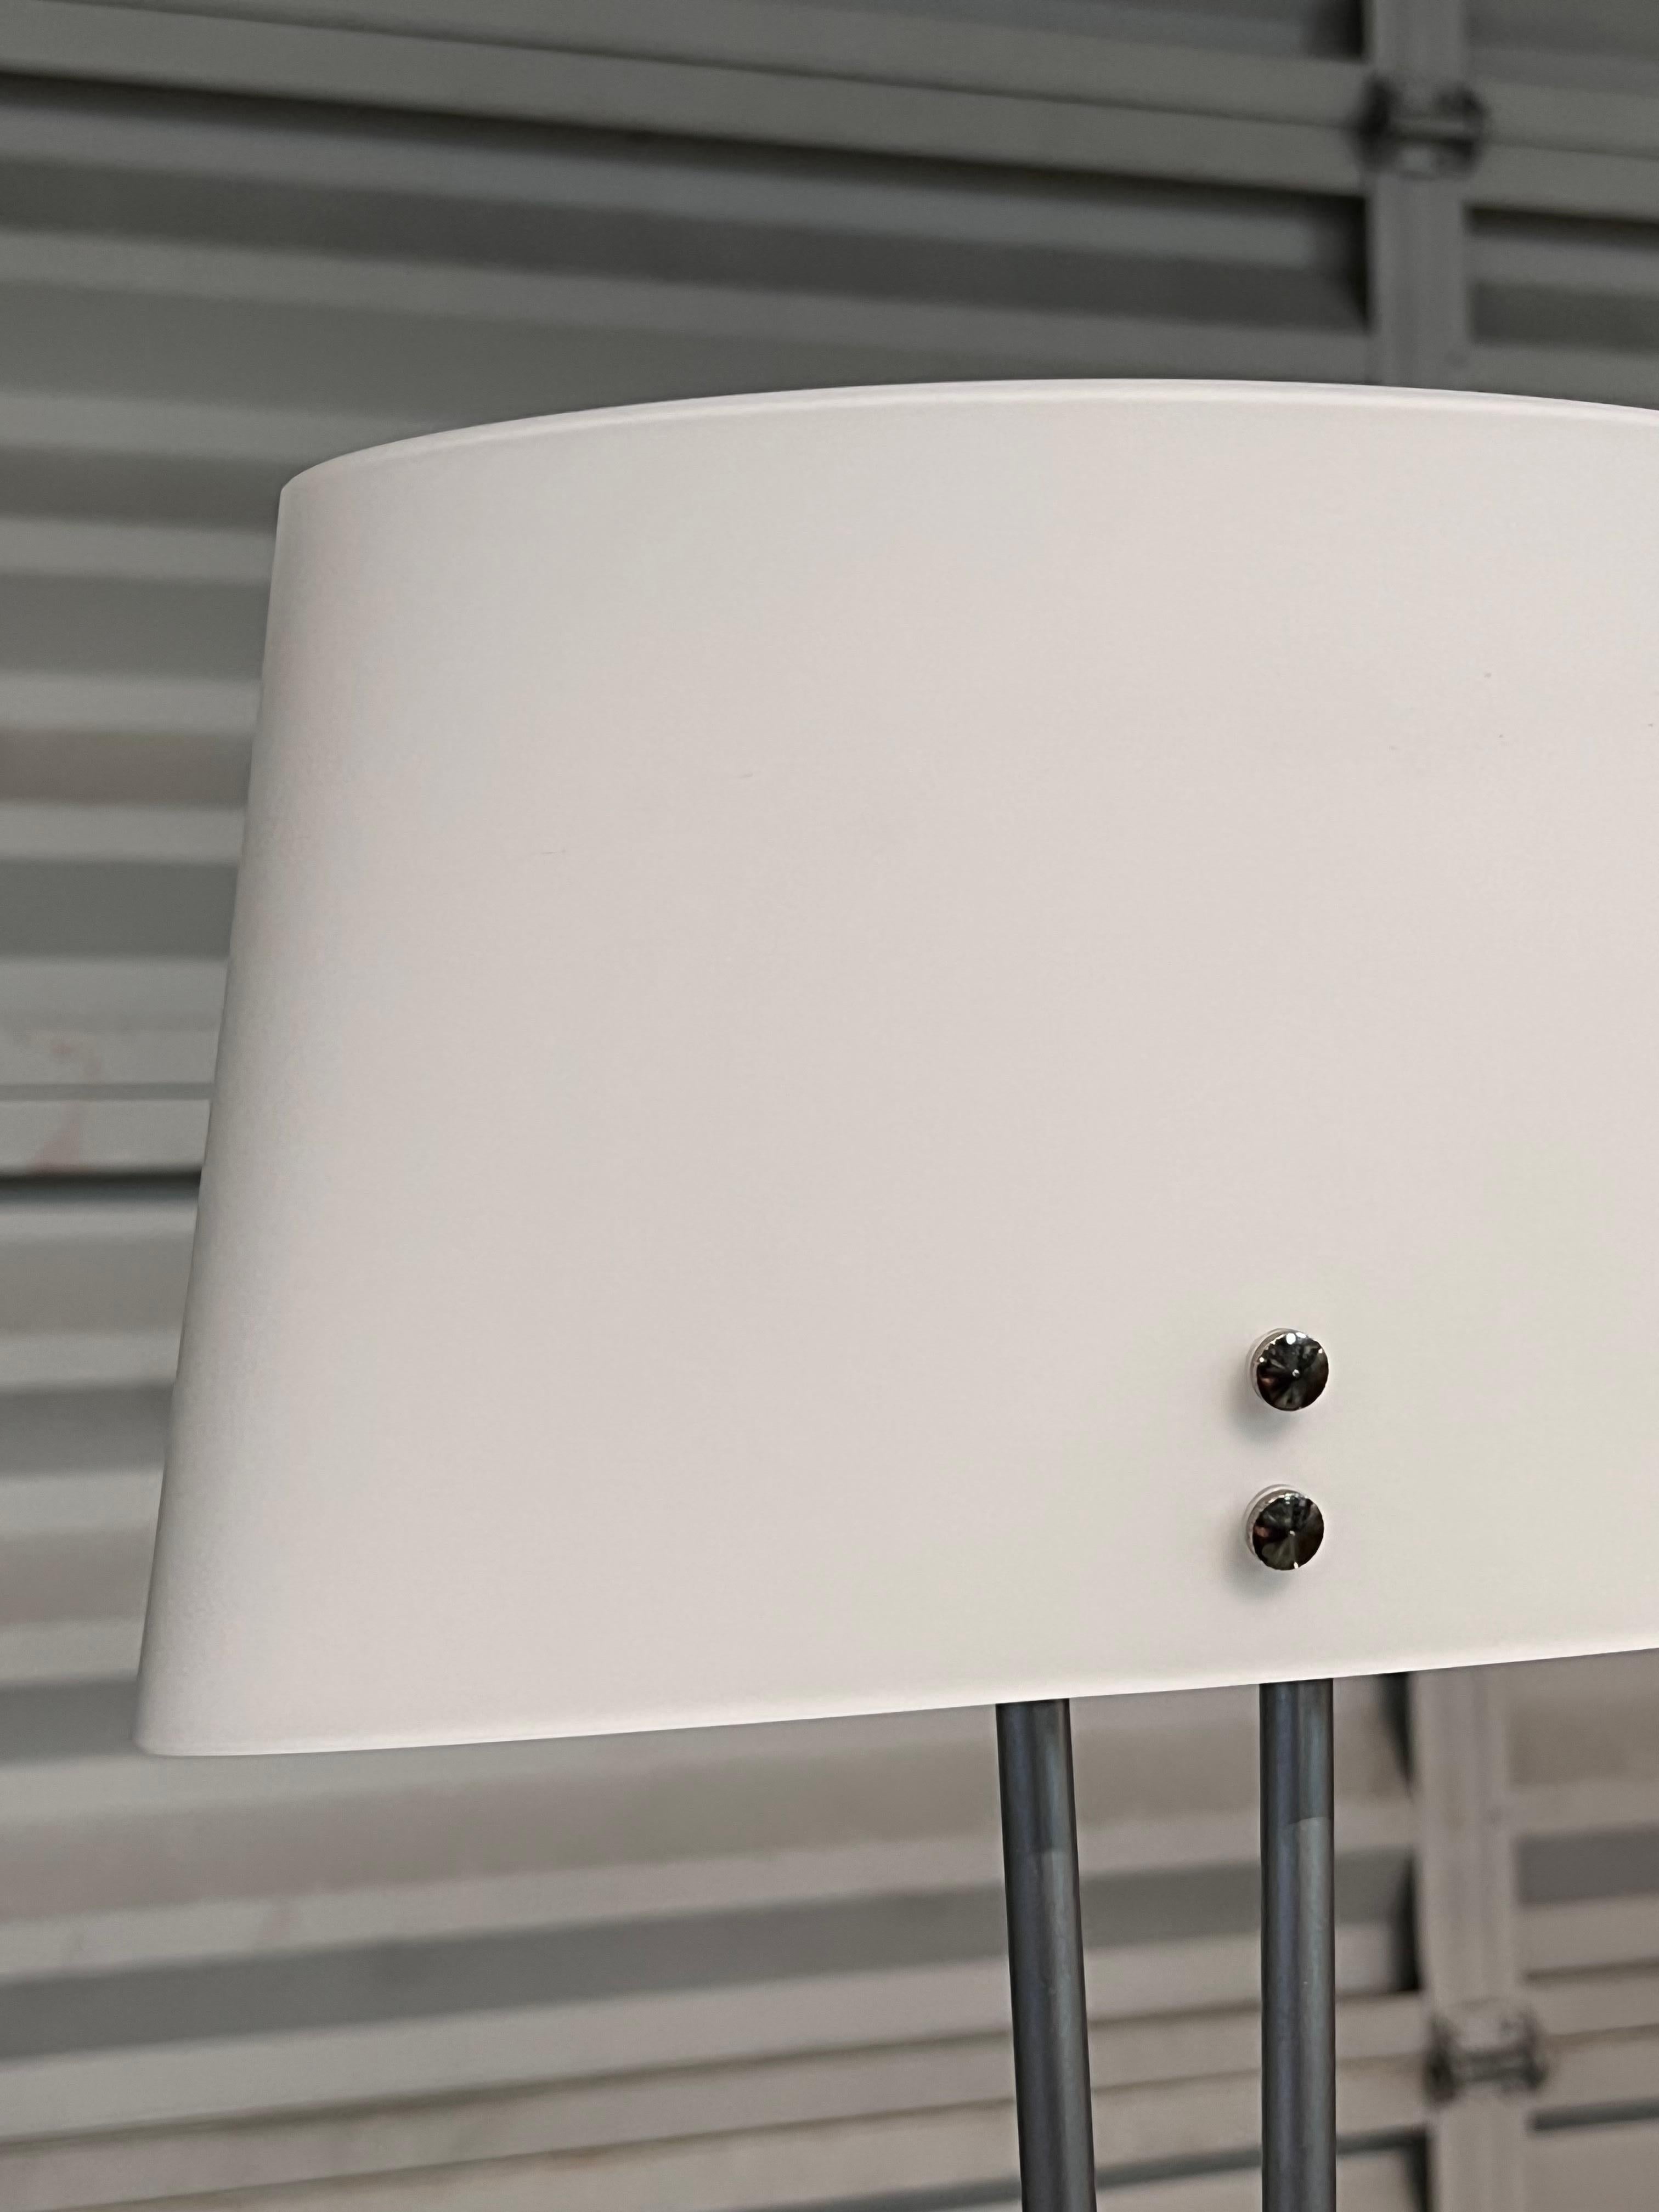 Valerio Bottin Vitt Terra Series White Murano and Steel Floor Lamp for Foscarini For Sale 8